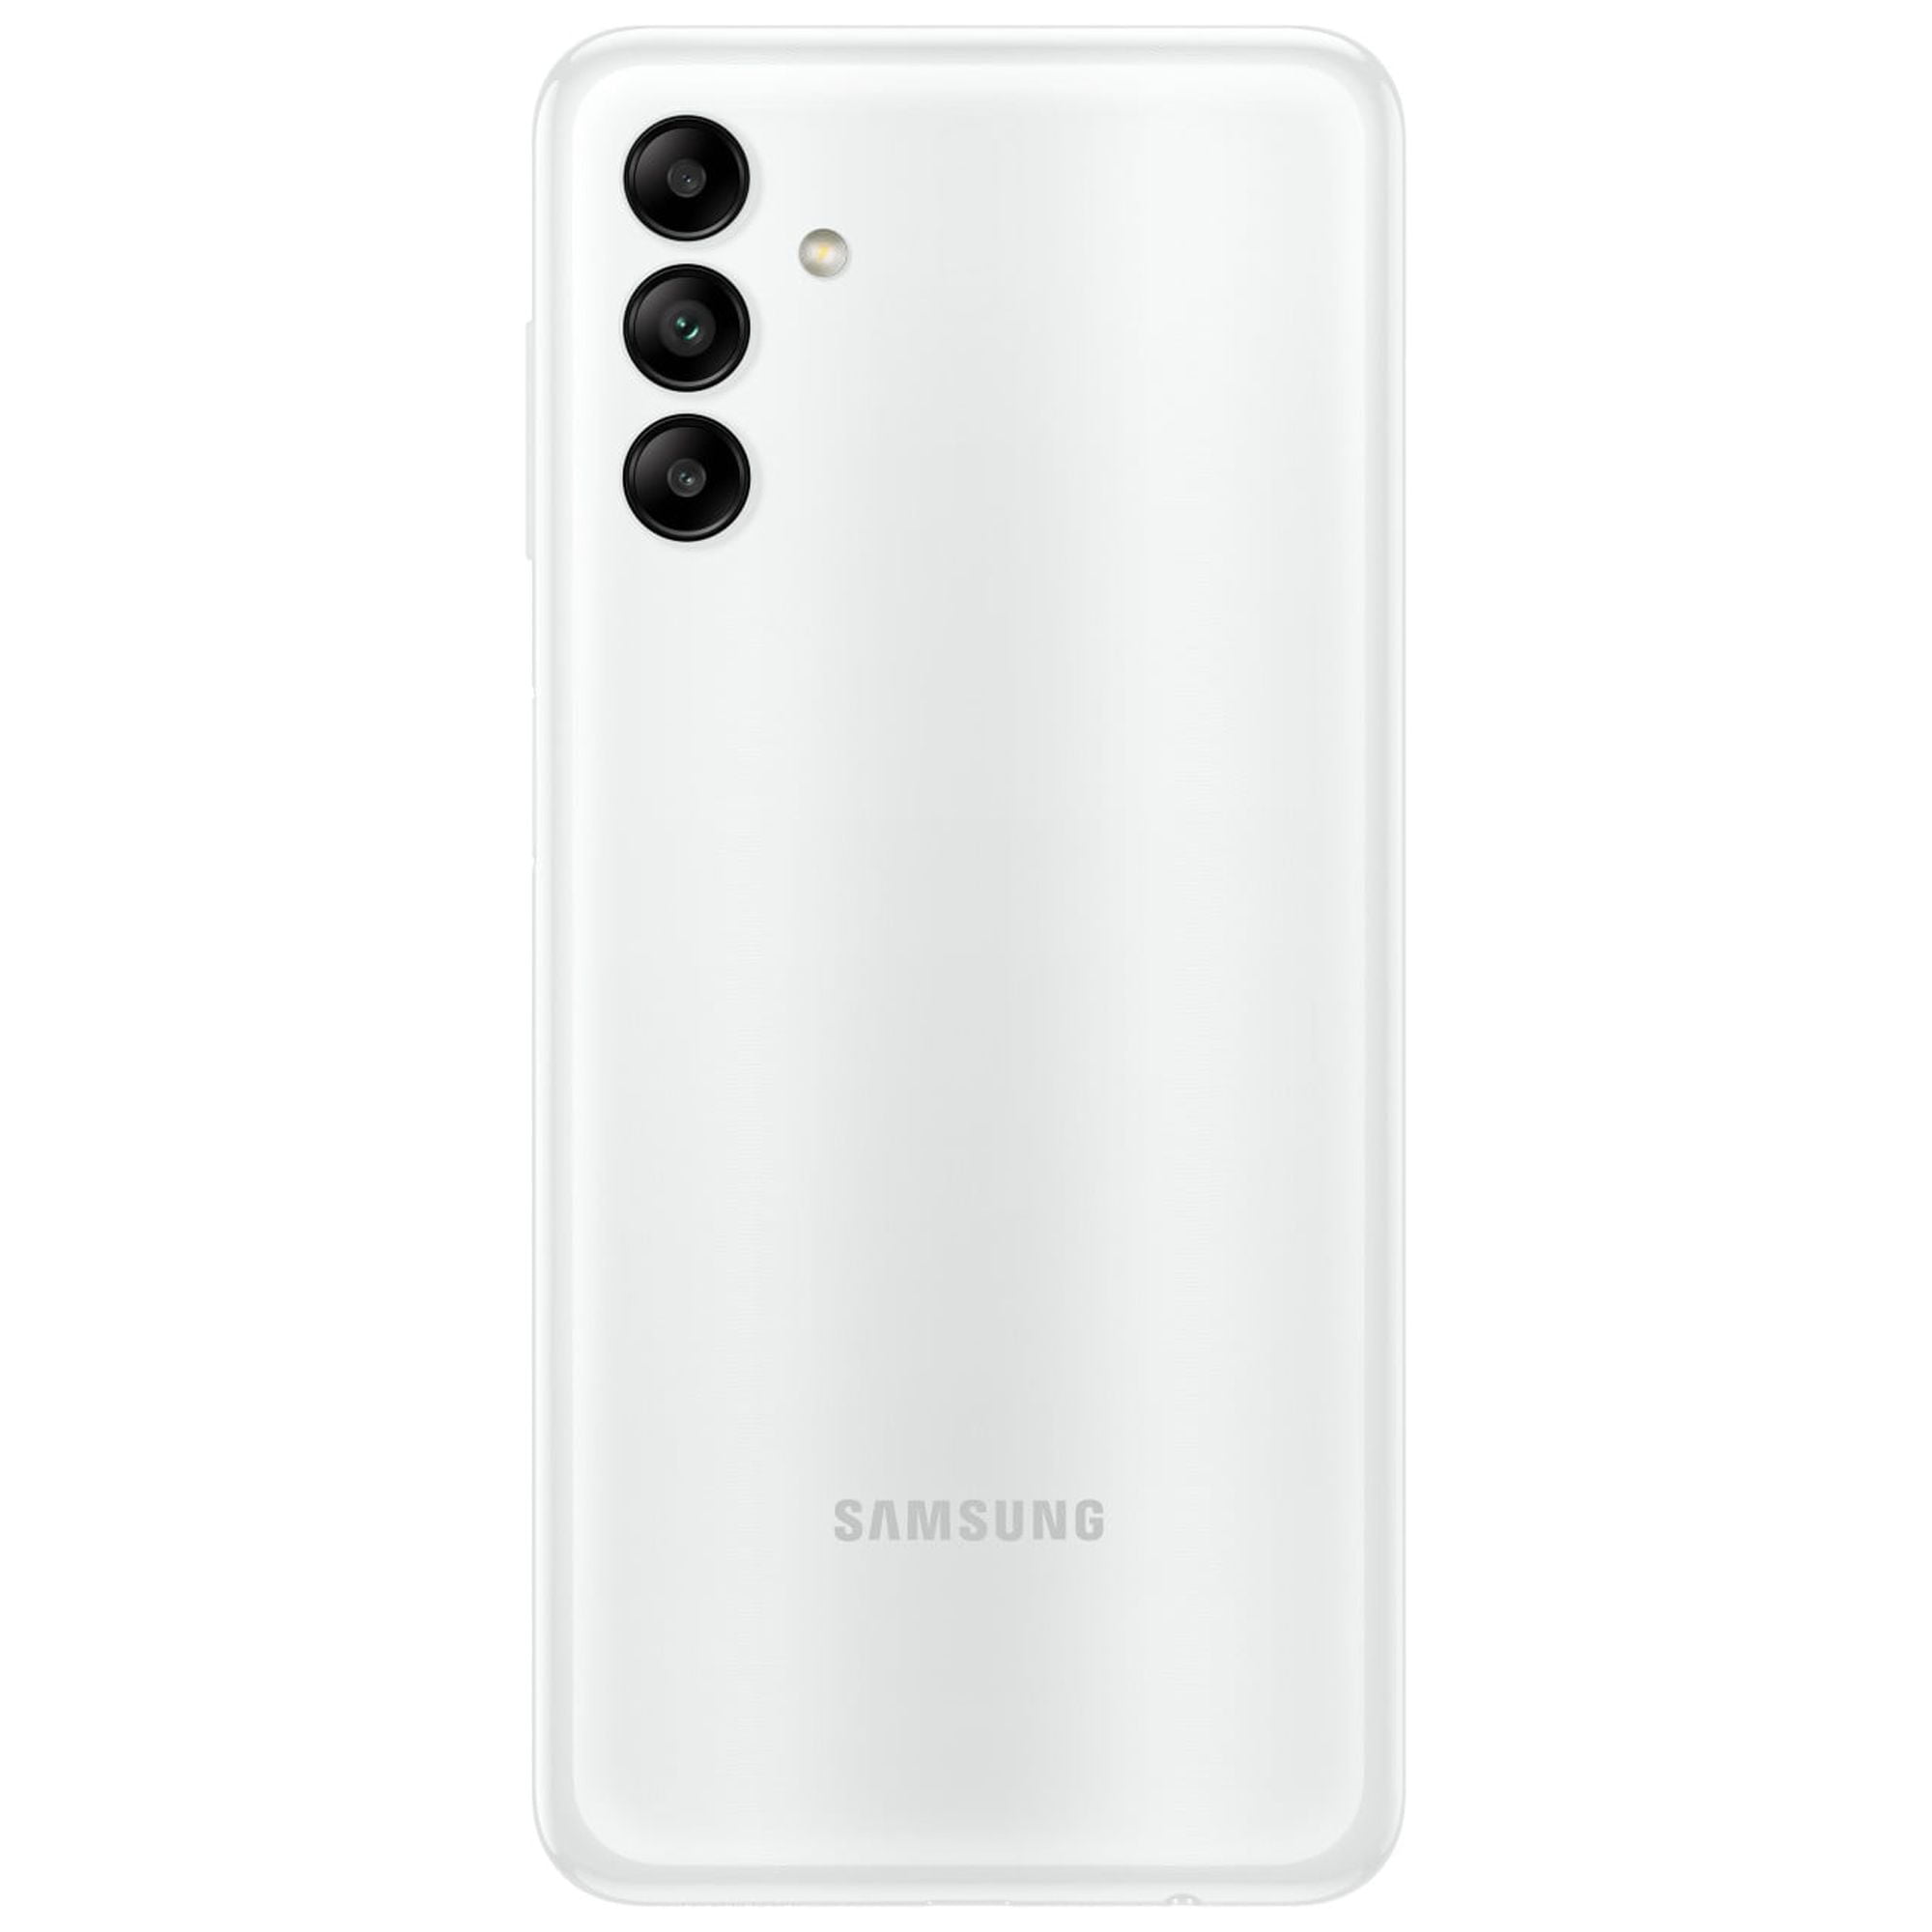 SAMSUNG Galaxy A04s ( 64 GB Storage, 4 GB RAM ) Online at Best Price On